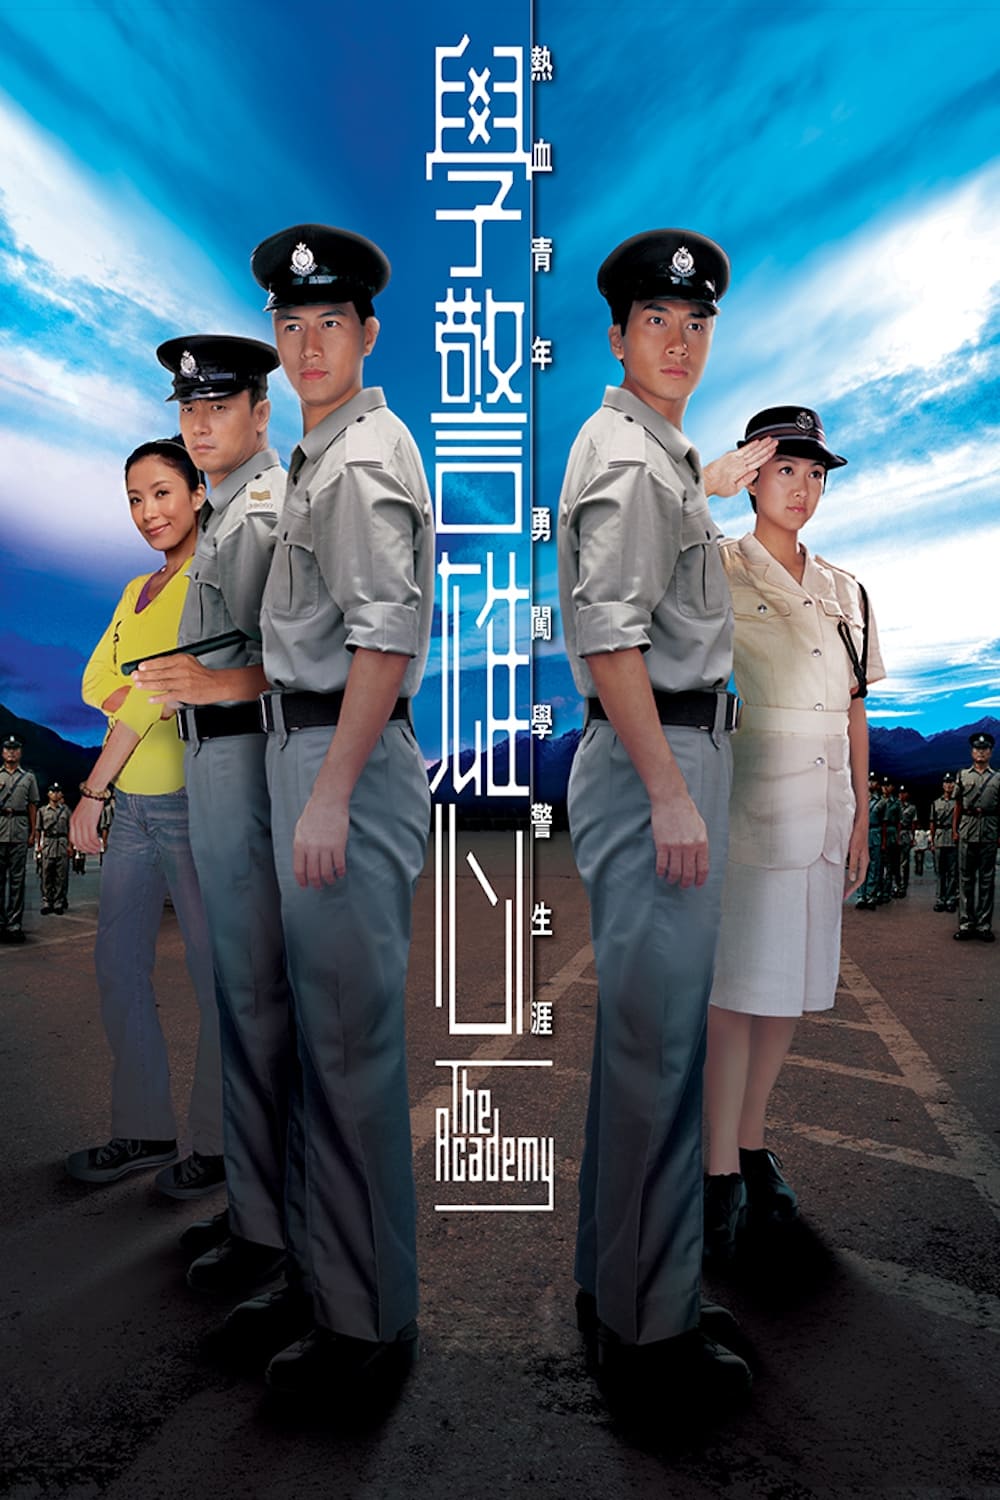 The Academy (2005)